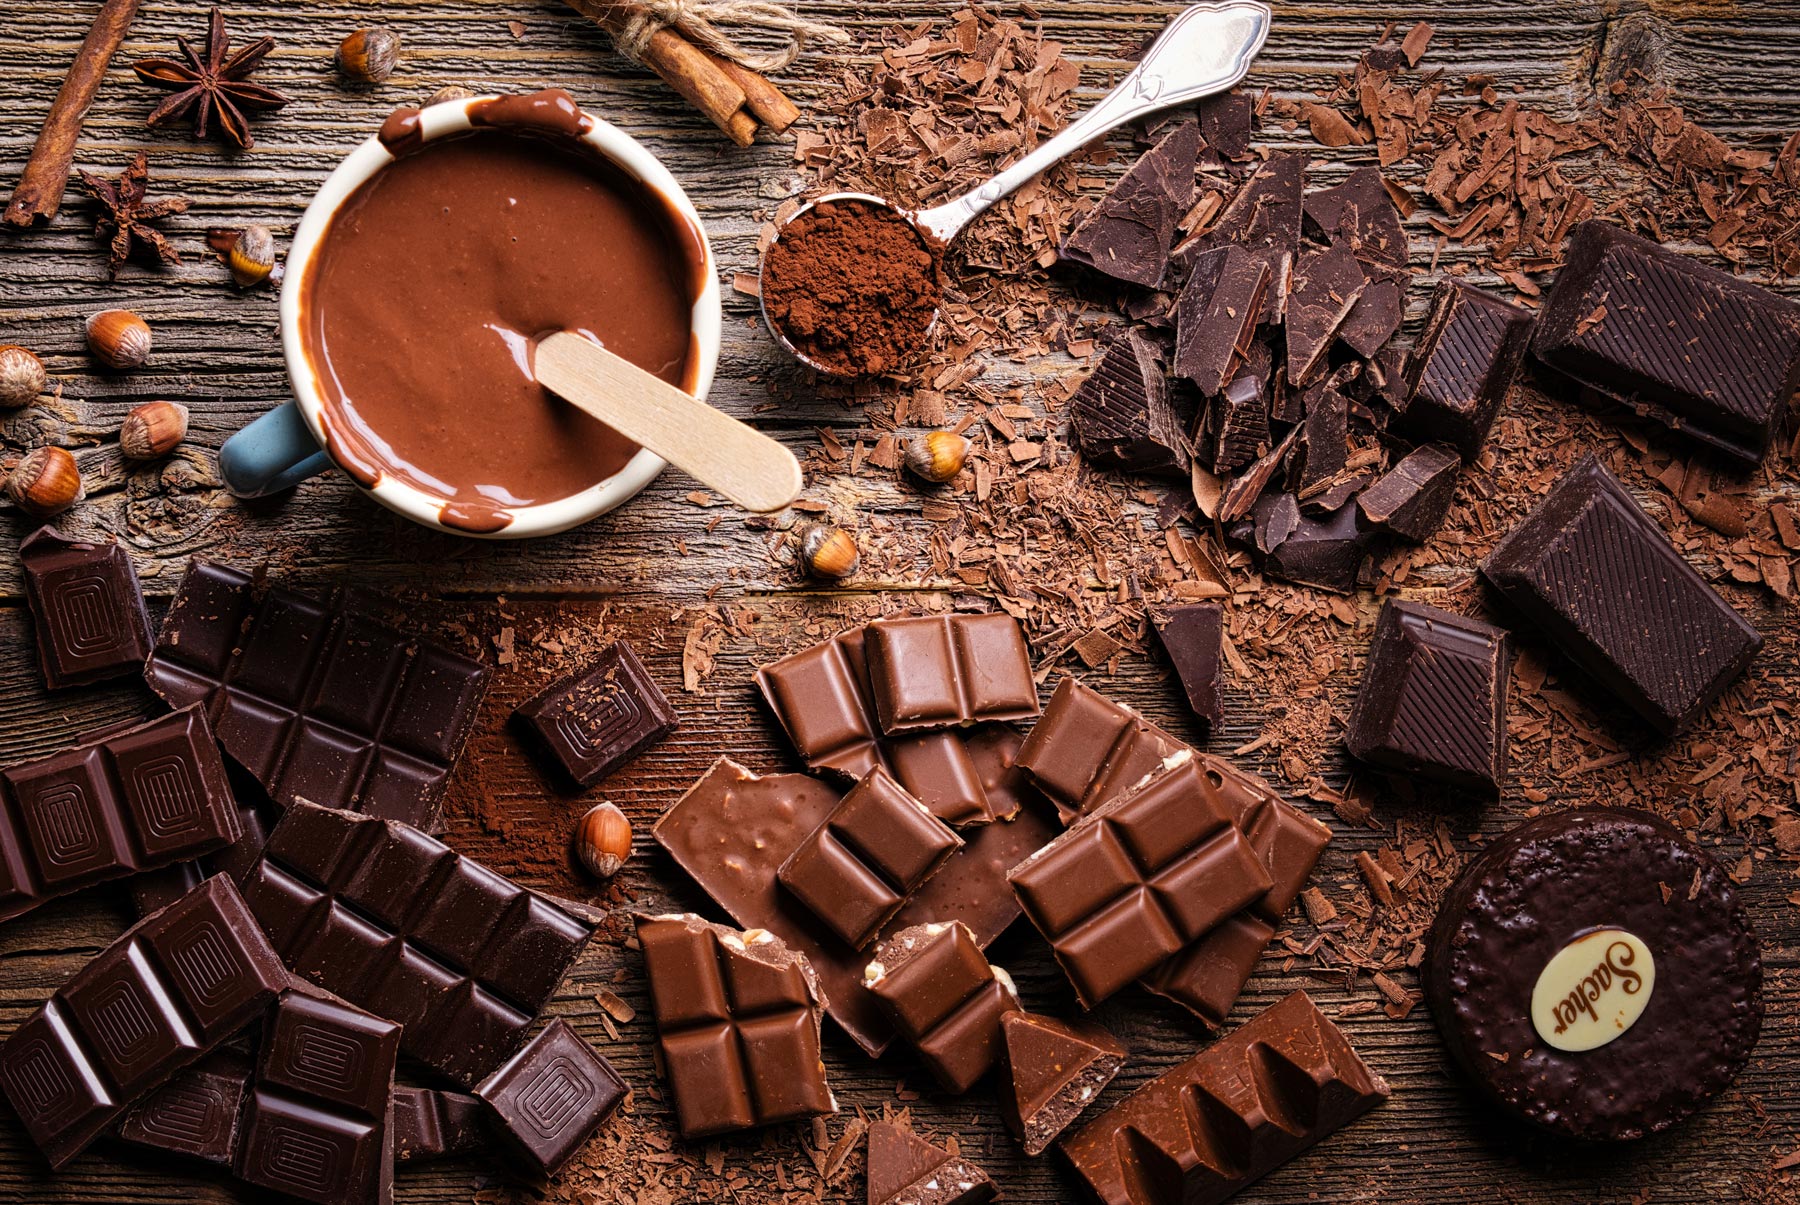 Çikolata bağımlılık yapar mı?